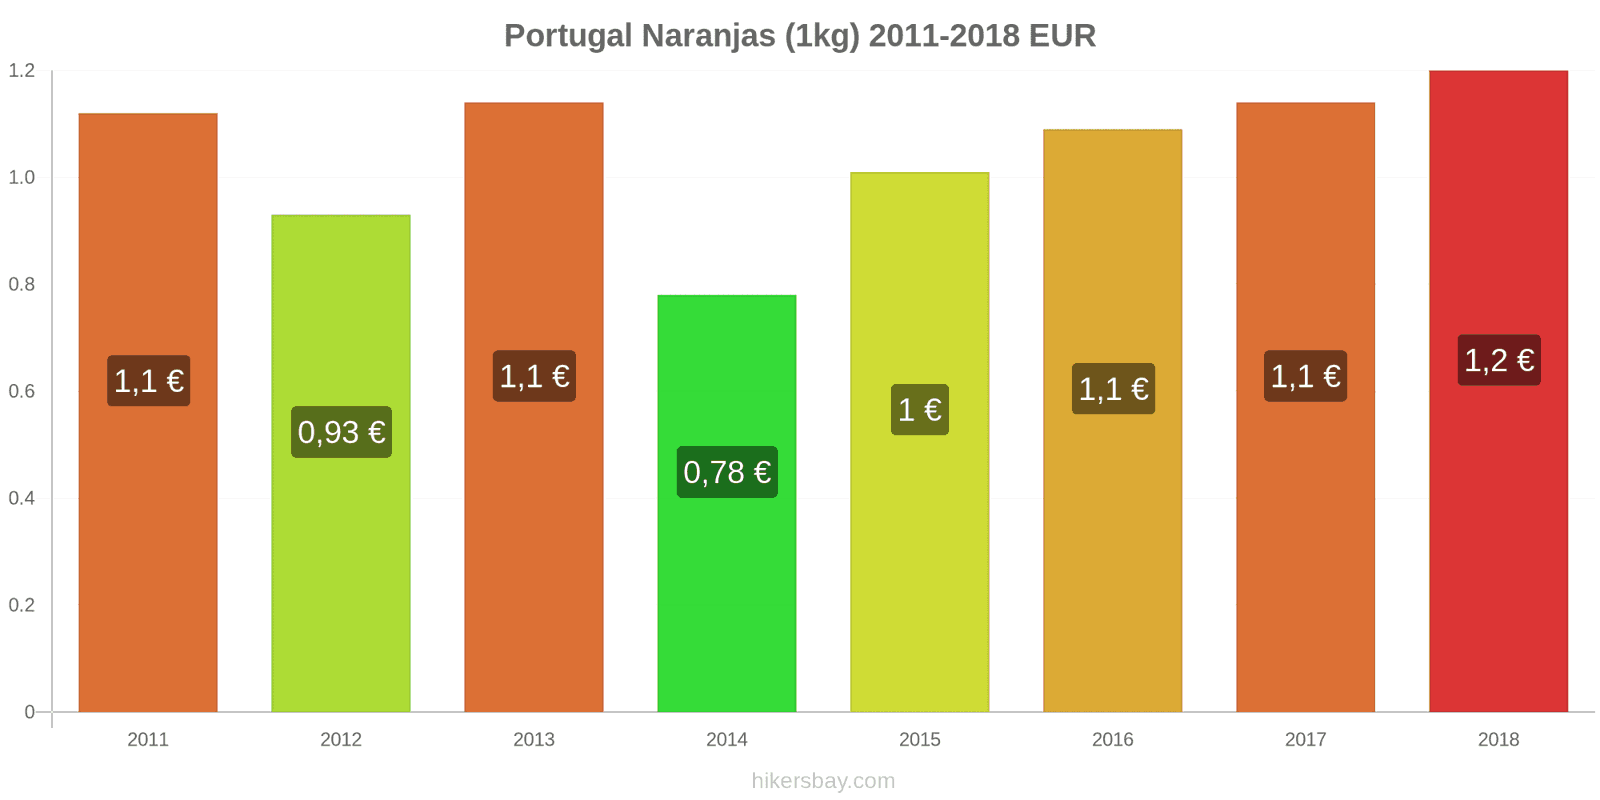 Portugal cambios de precios Naranjas (1kg) hikersbay.com